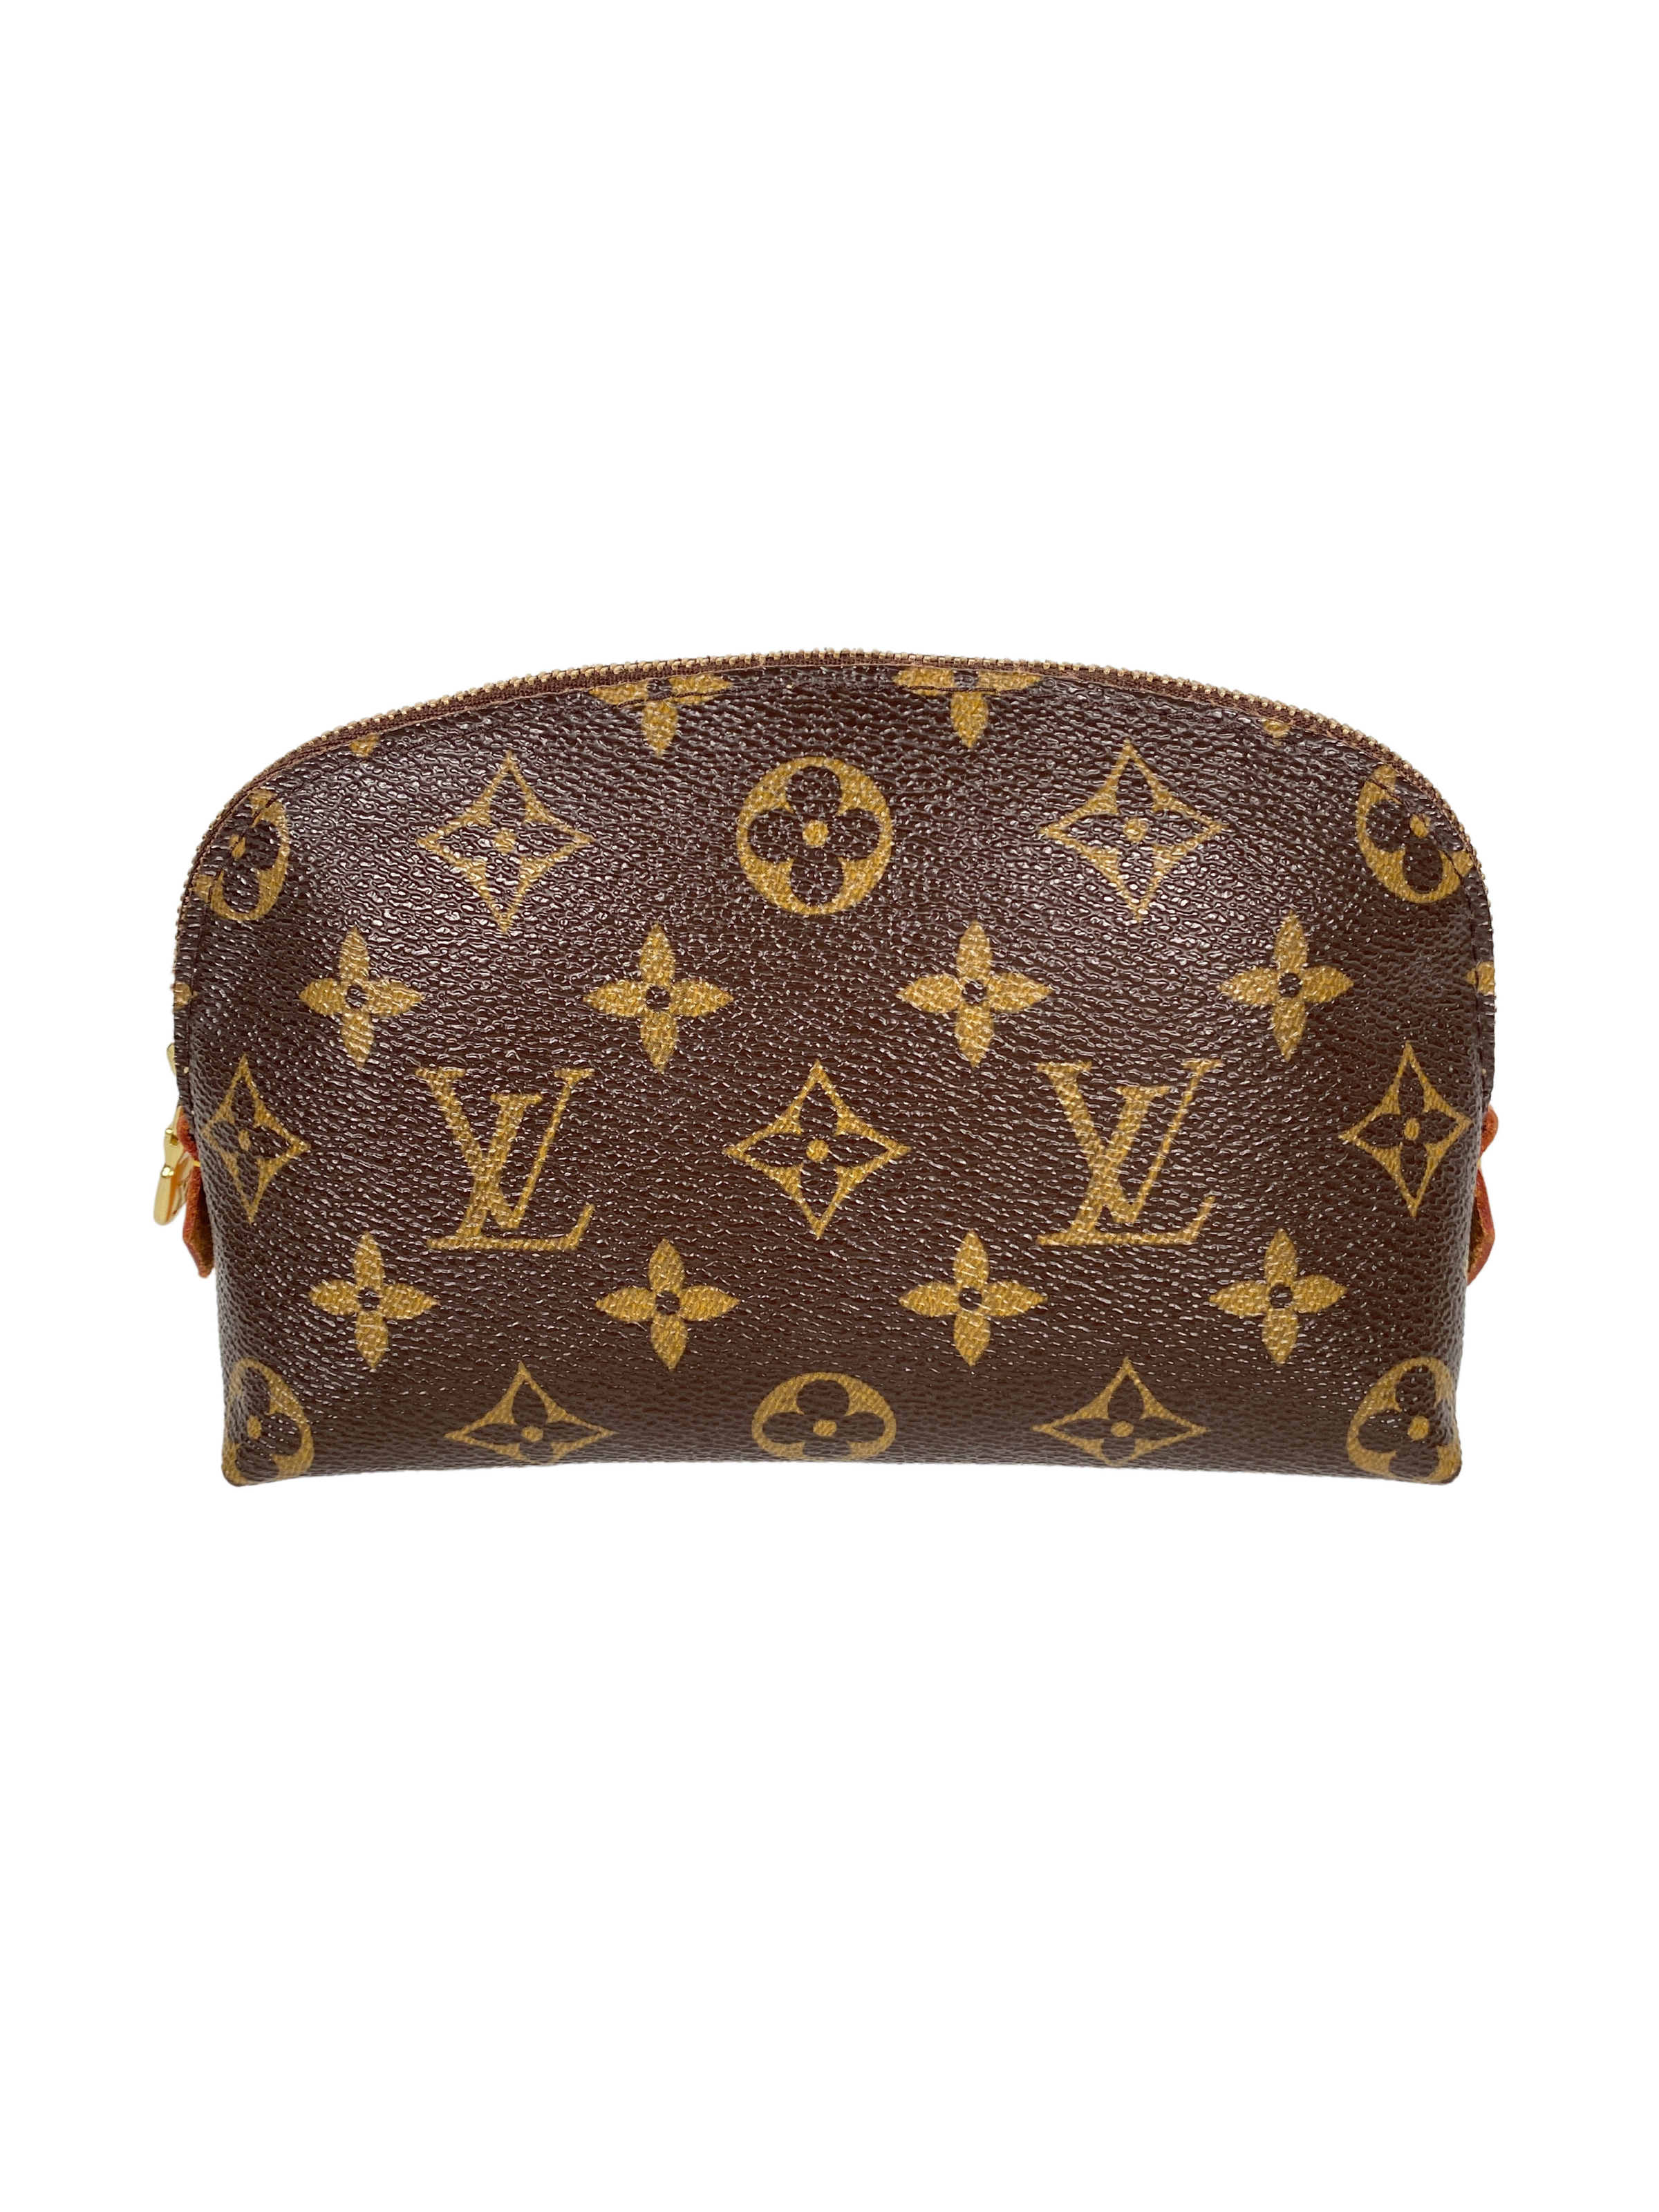 Louis Vuitton Monogram Cosmetic Pouch, myGemma, AU